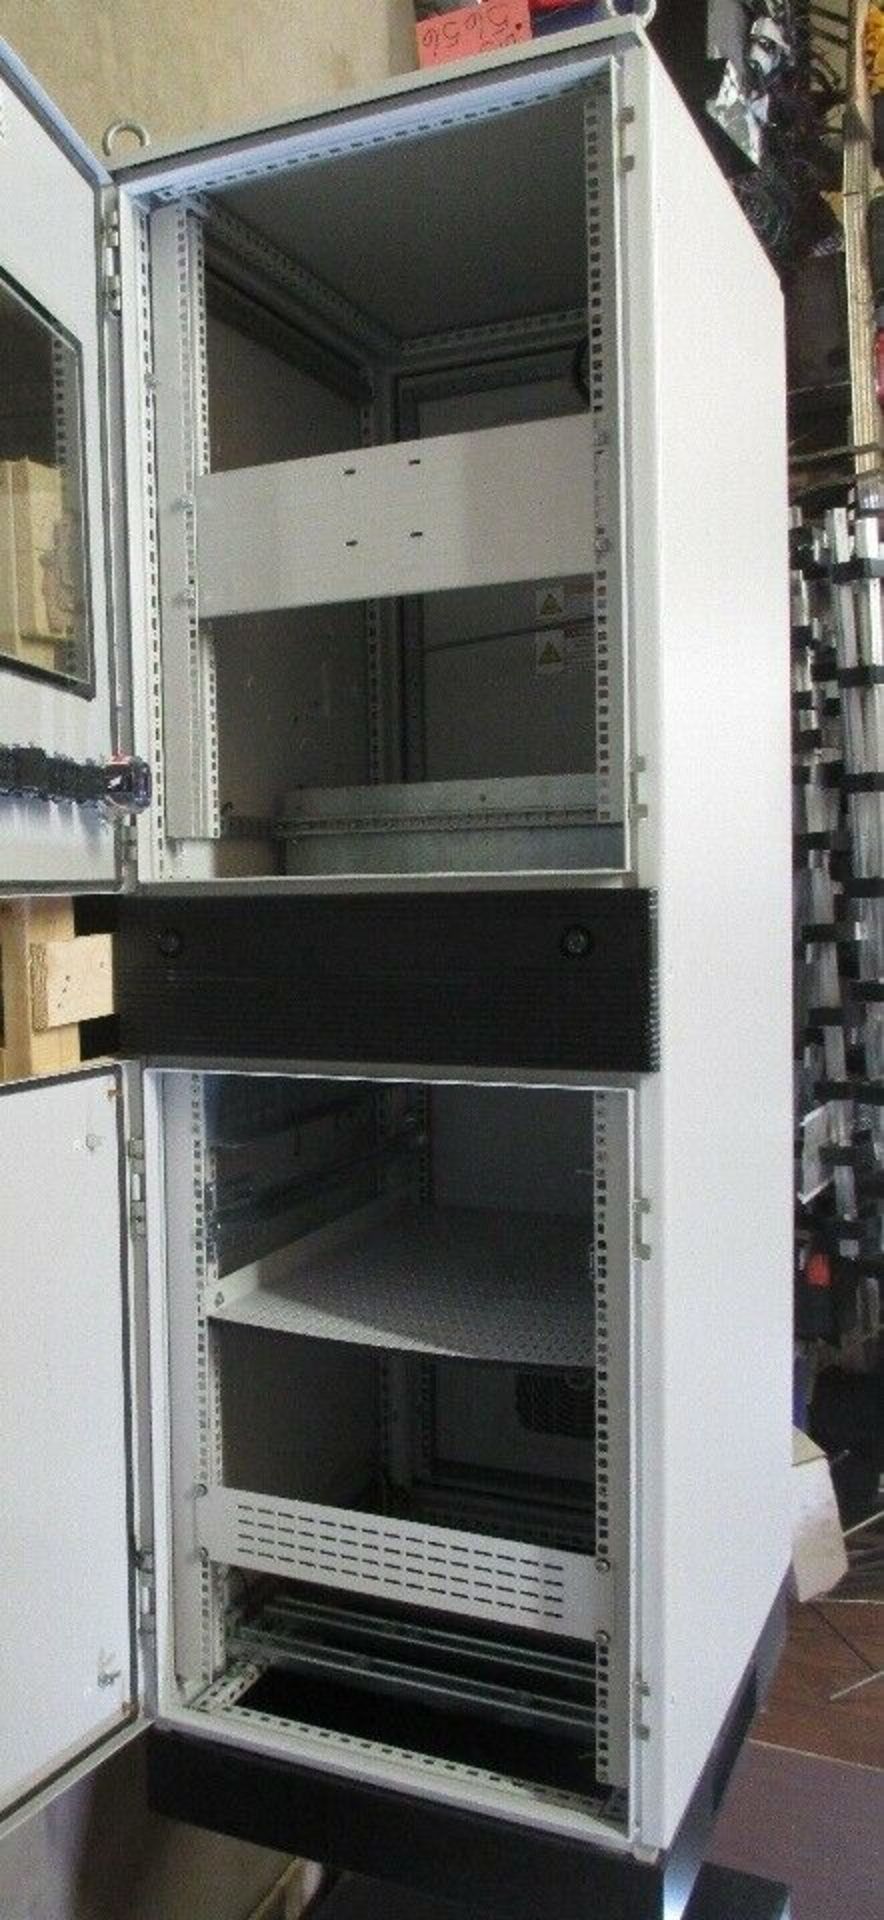 Hoffman Computer Server Cabinet, 7'5" High X 32" Deep X 24" Wide